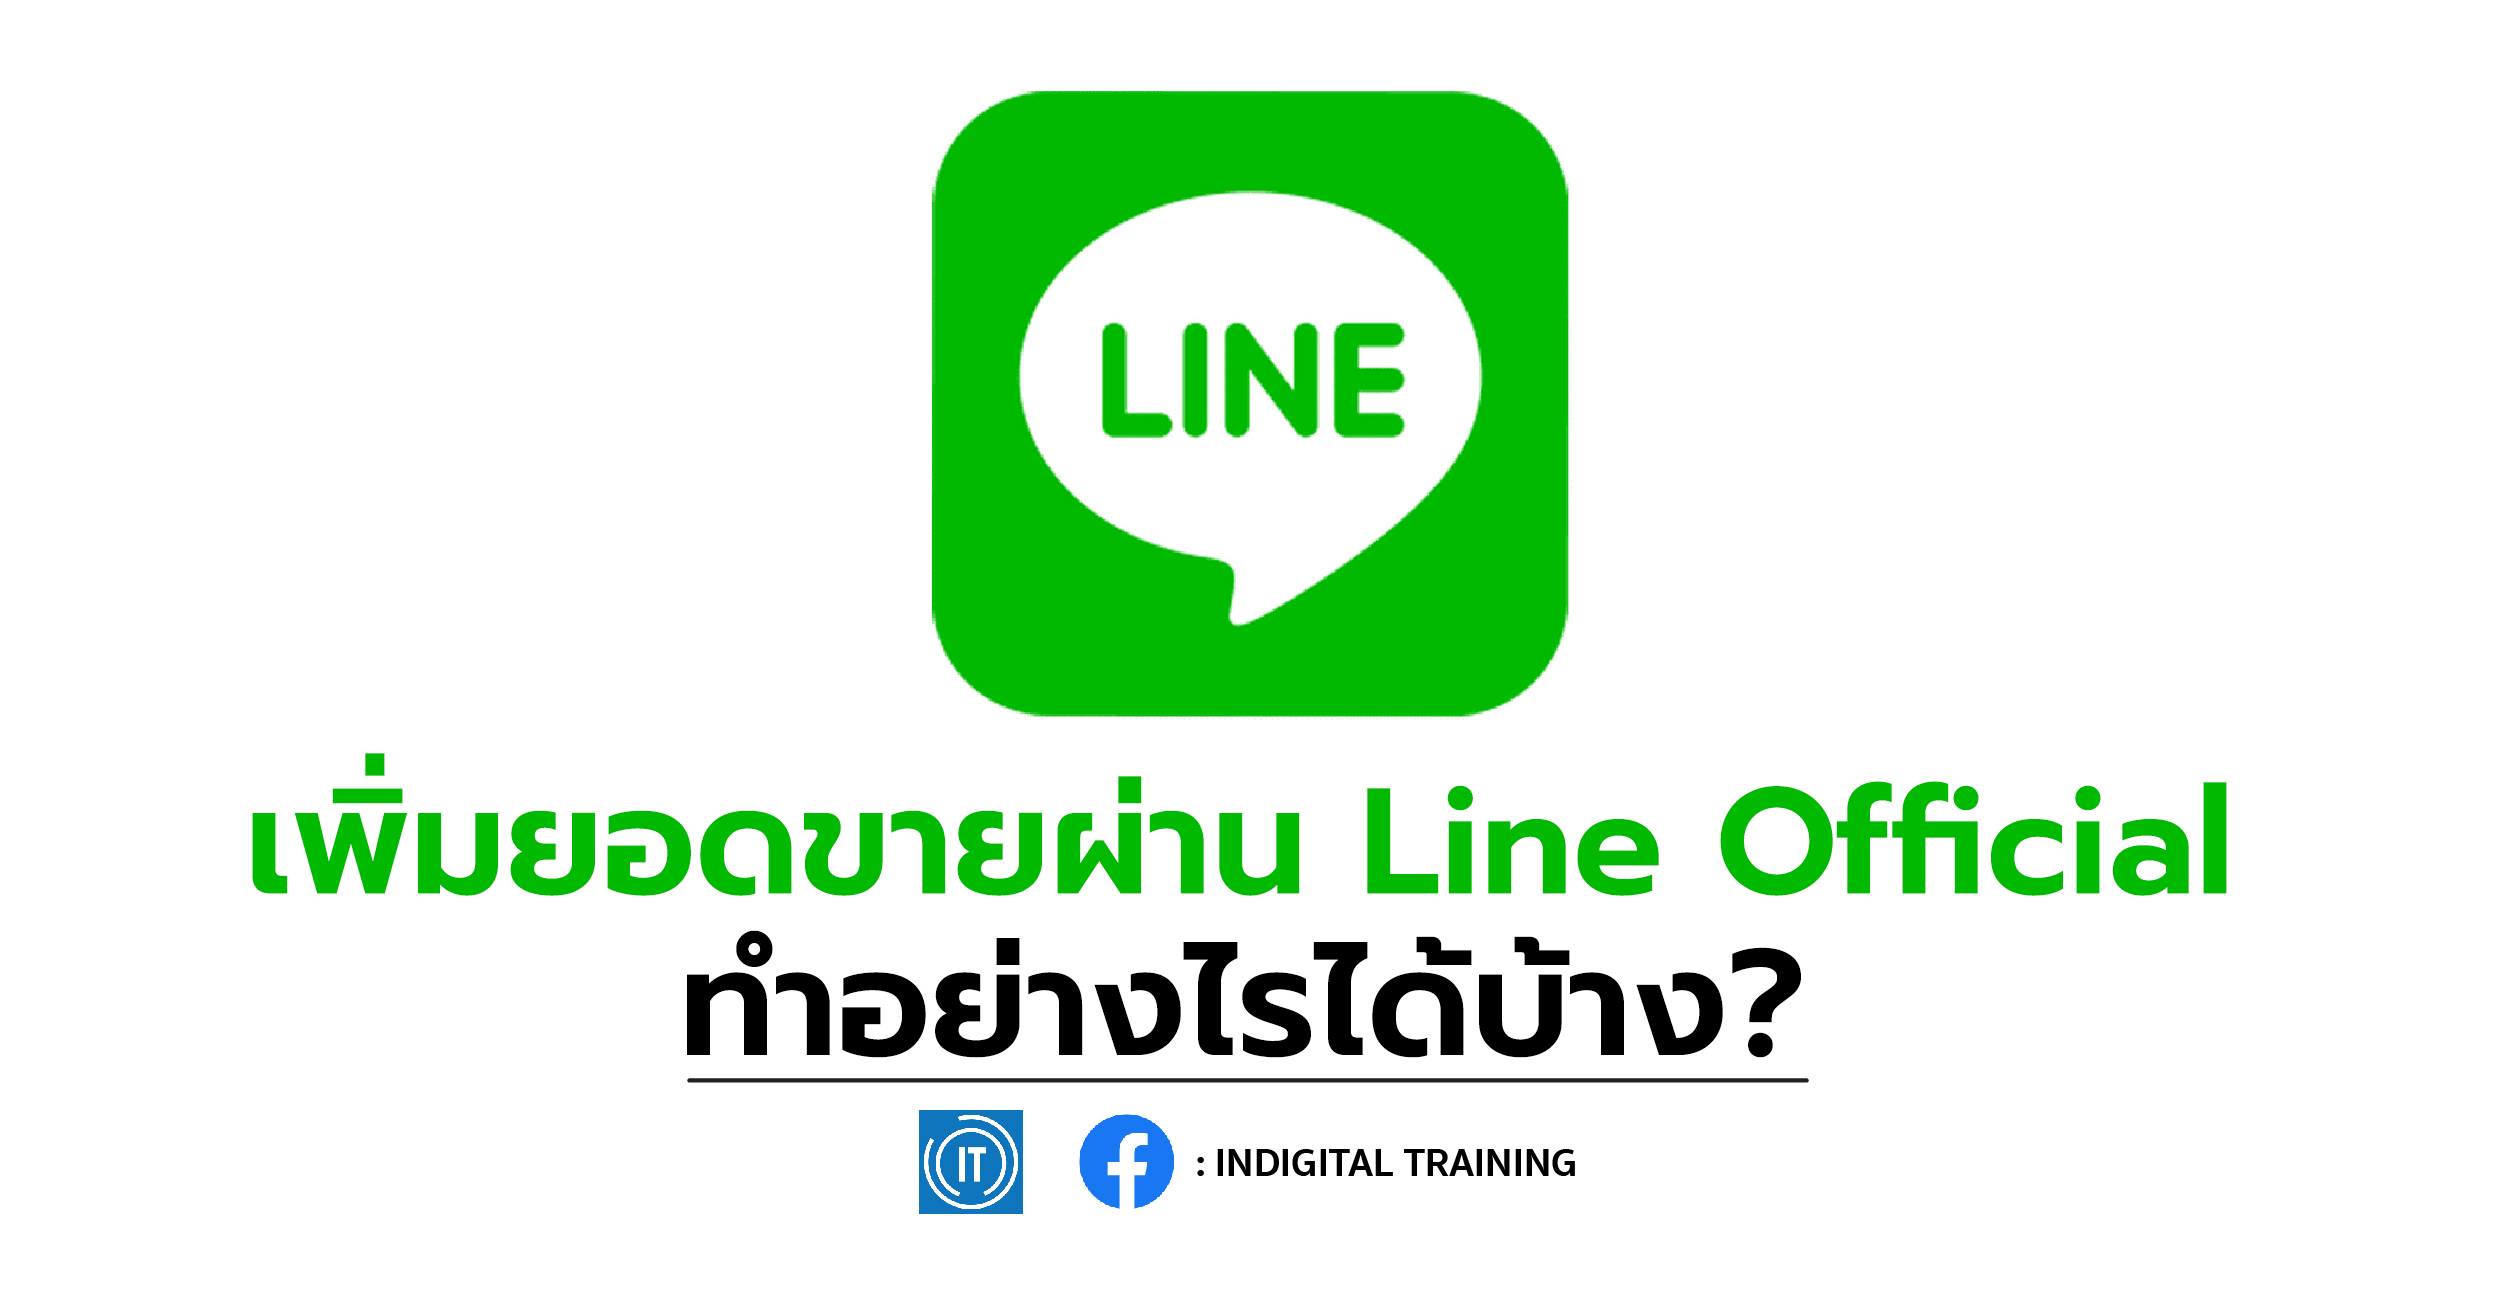 เพิ่มยอดขายผ่าน Line Official ทำอย่างไรได้บ้าง?